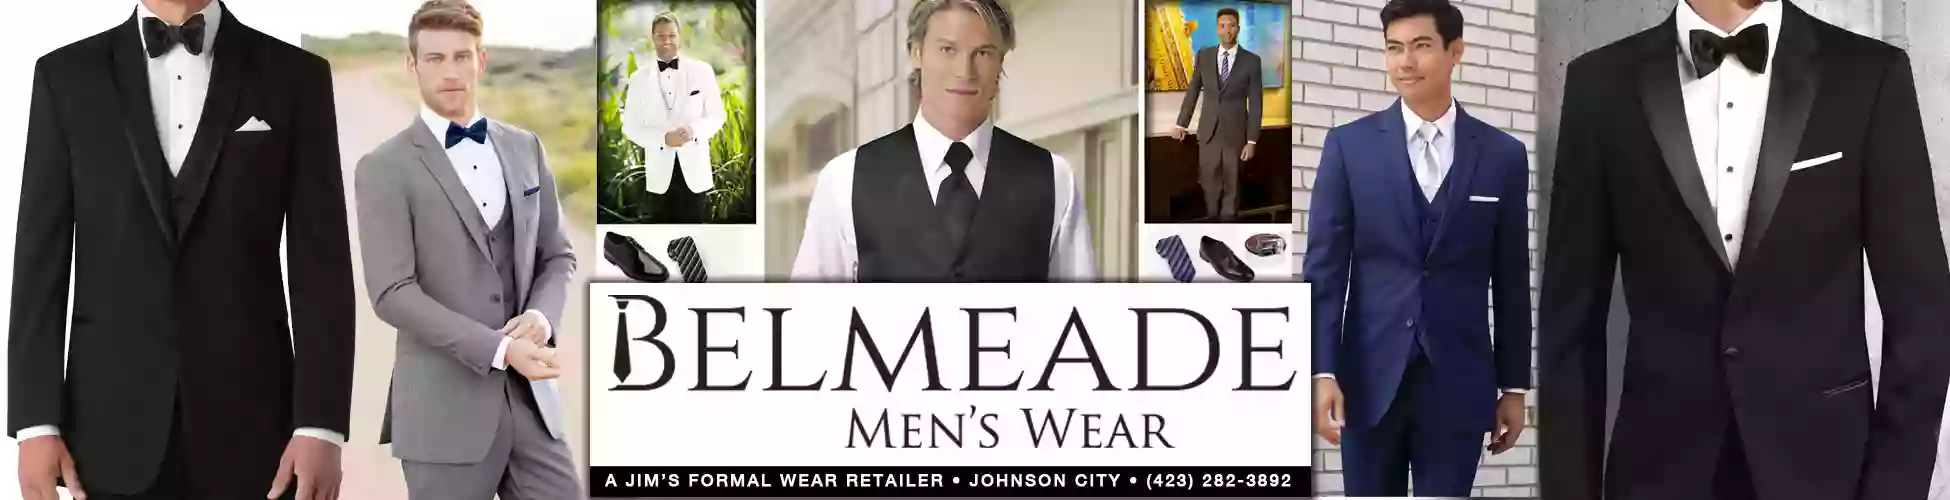 Belmeade Men's Formal Wear